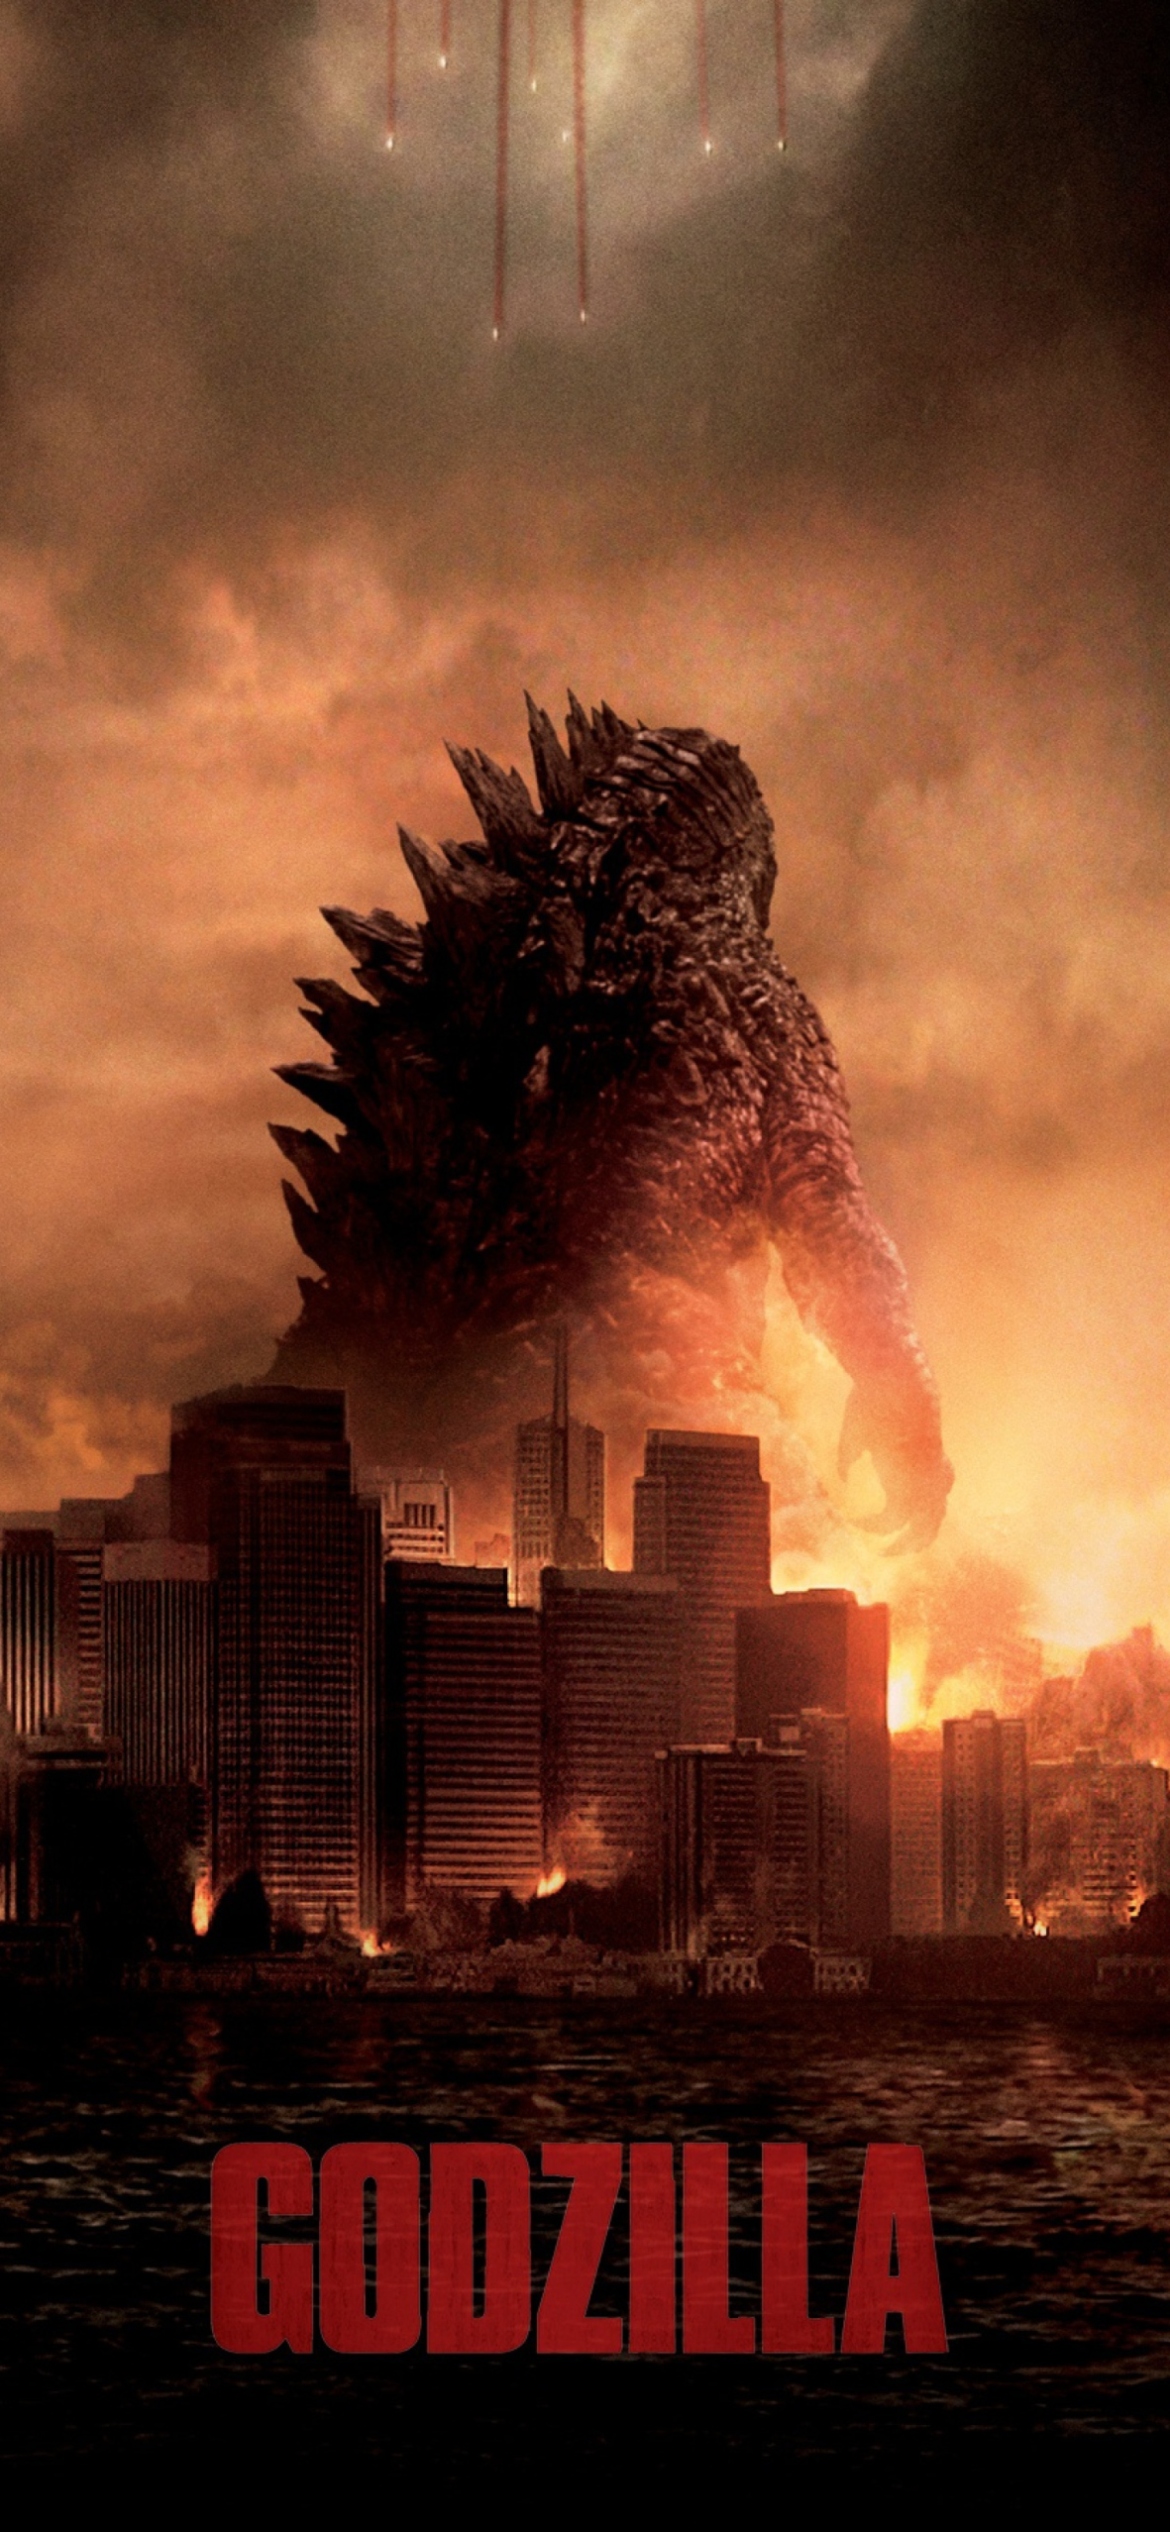 Das 2014 Godzilla Wallpaper 1170x2532